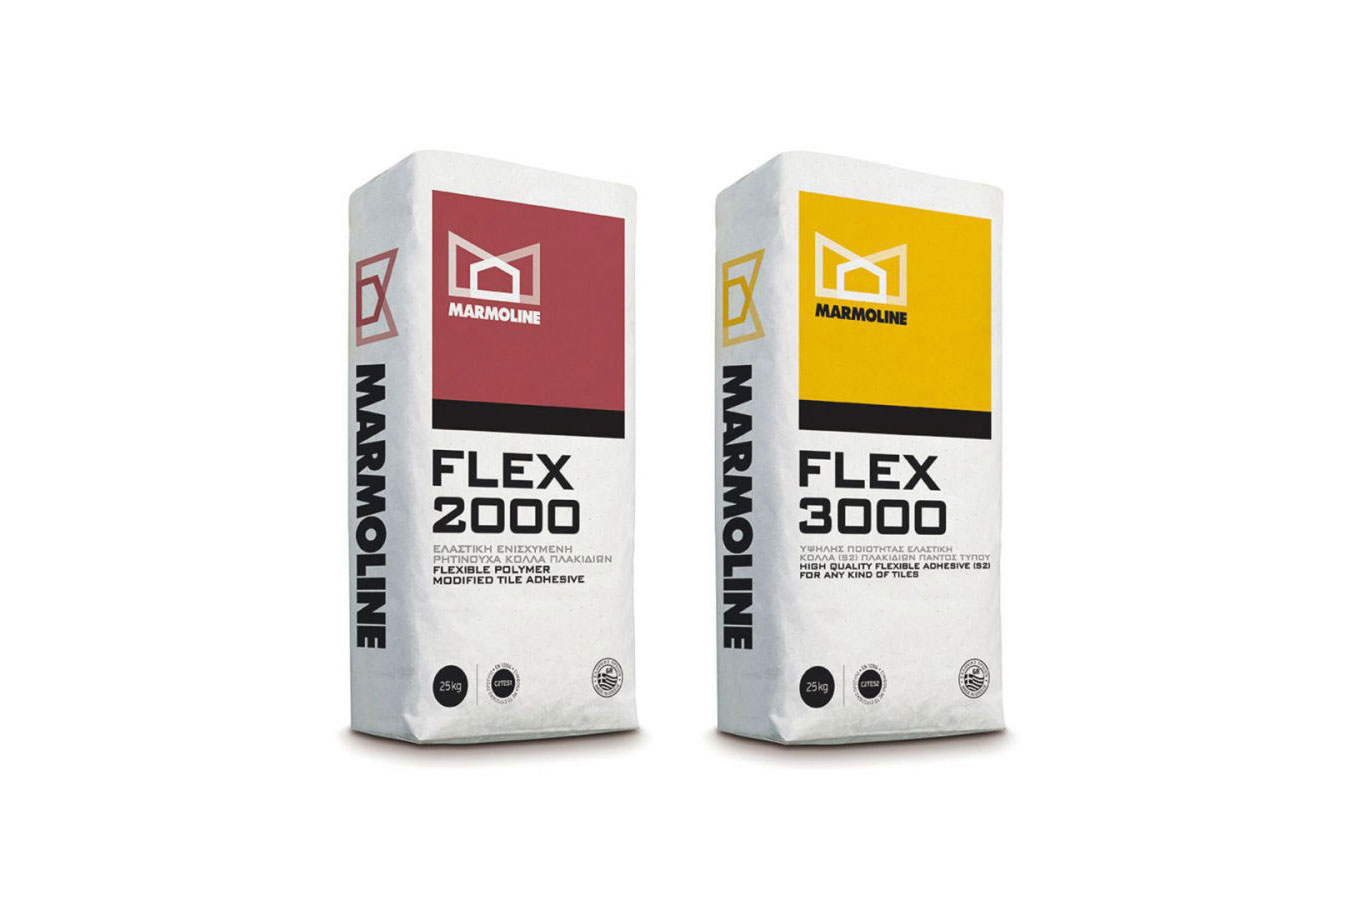 FLEX 2000 &amp; FLEX 3000